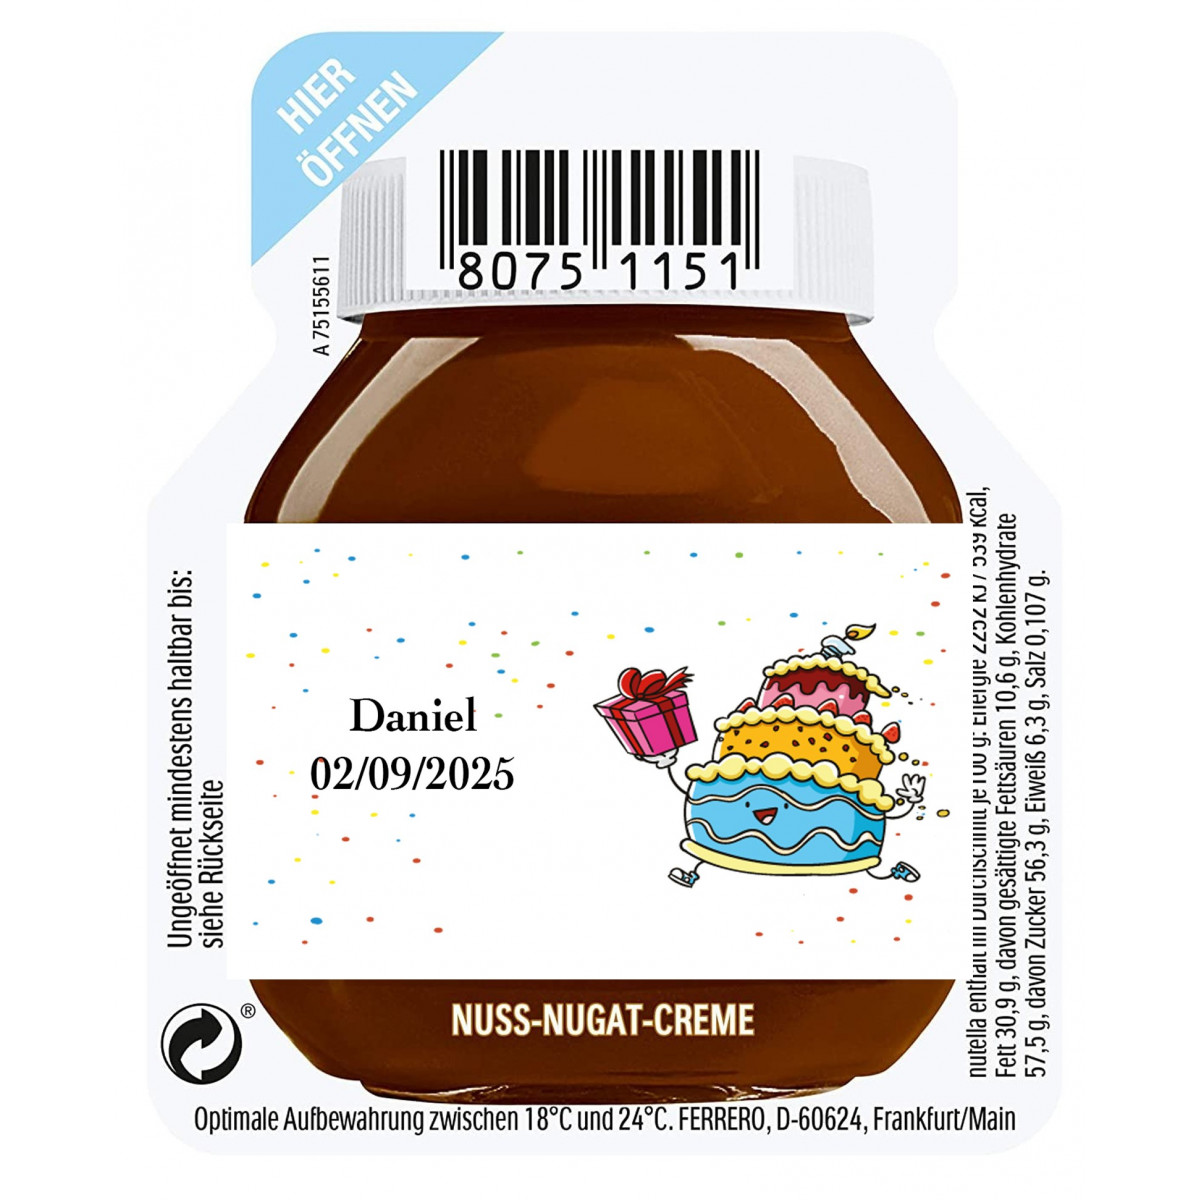 15 gramas de nutella para um atendimento personalizado com adesivo de aniversário